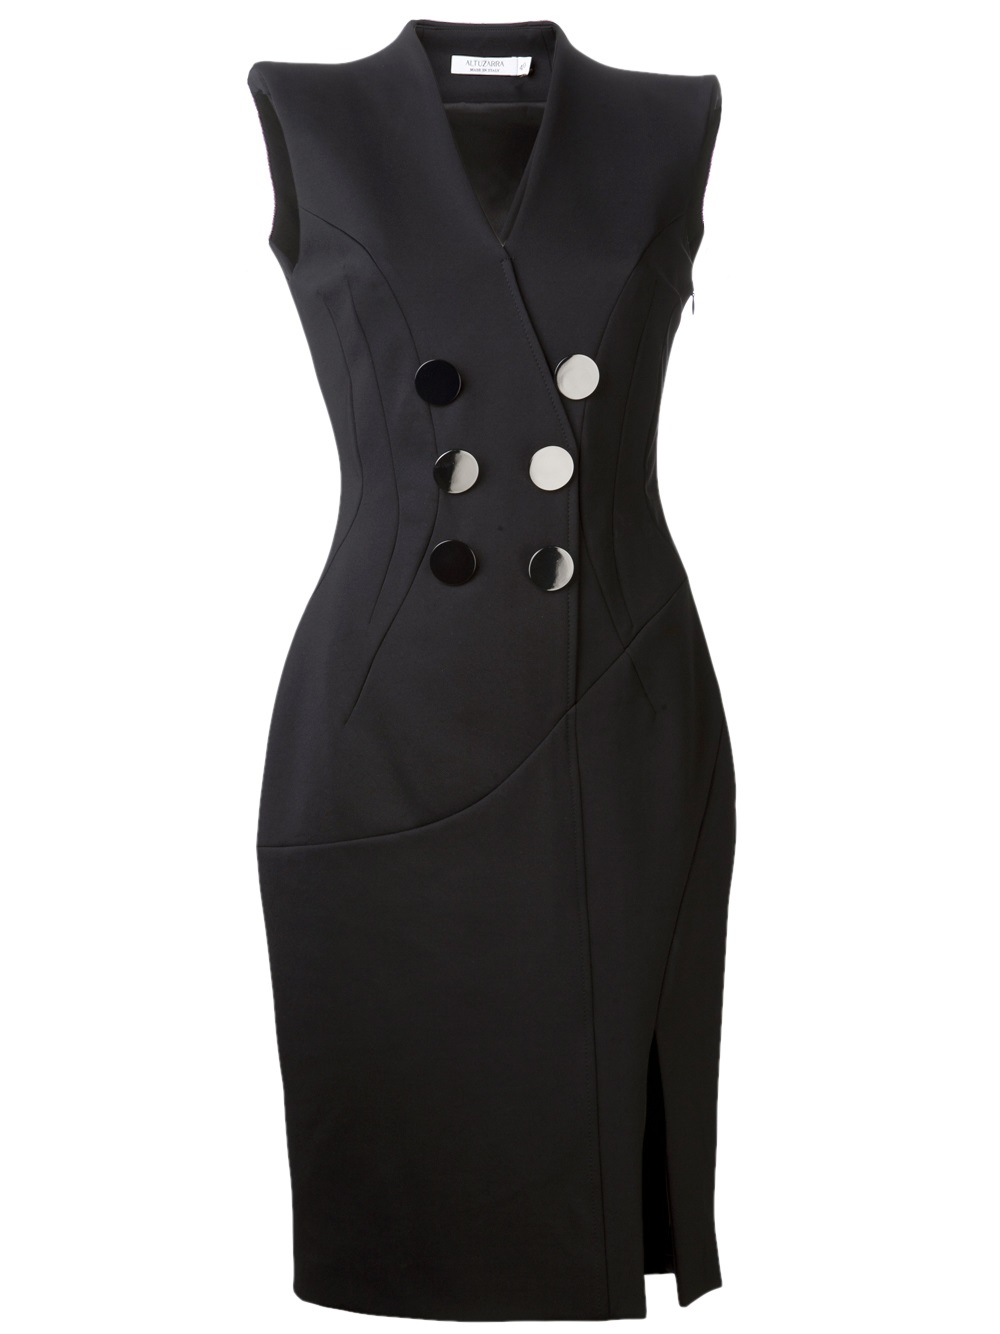 Altuzarra Double Breasted Button Dress in Black | Lyst